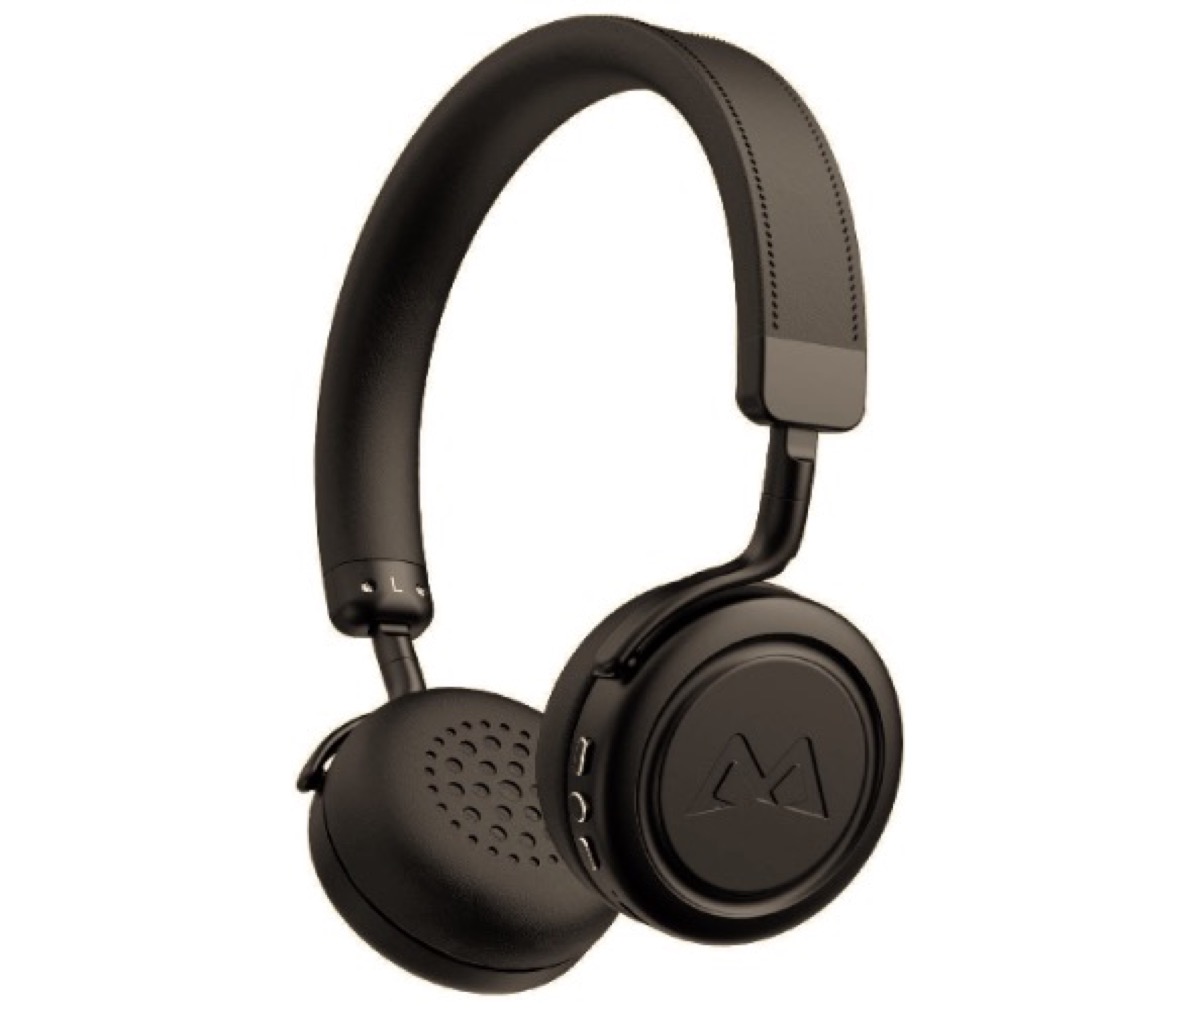 Cuffie Bluetooth on-ear eleganti ed economiche a soli 13,99 euro